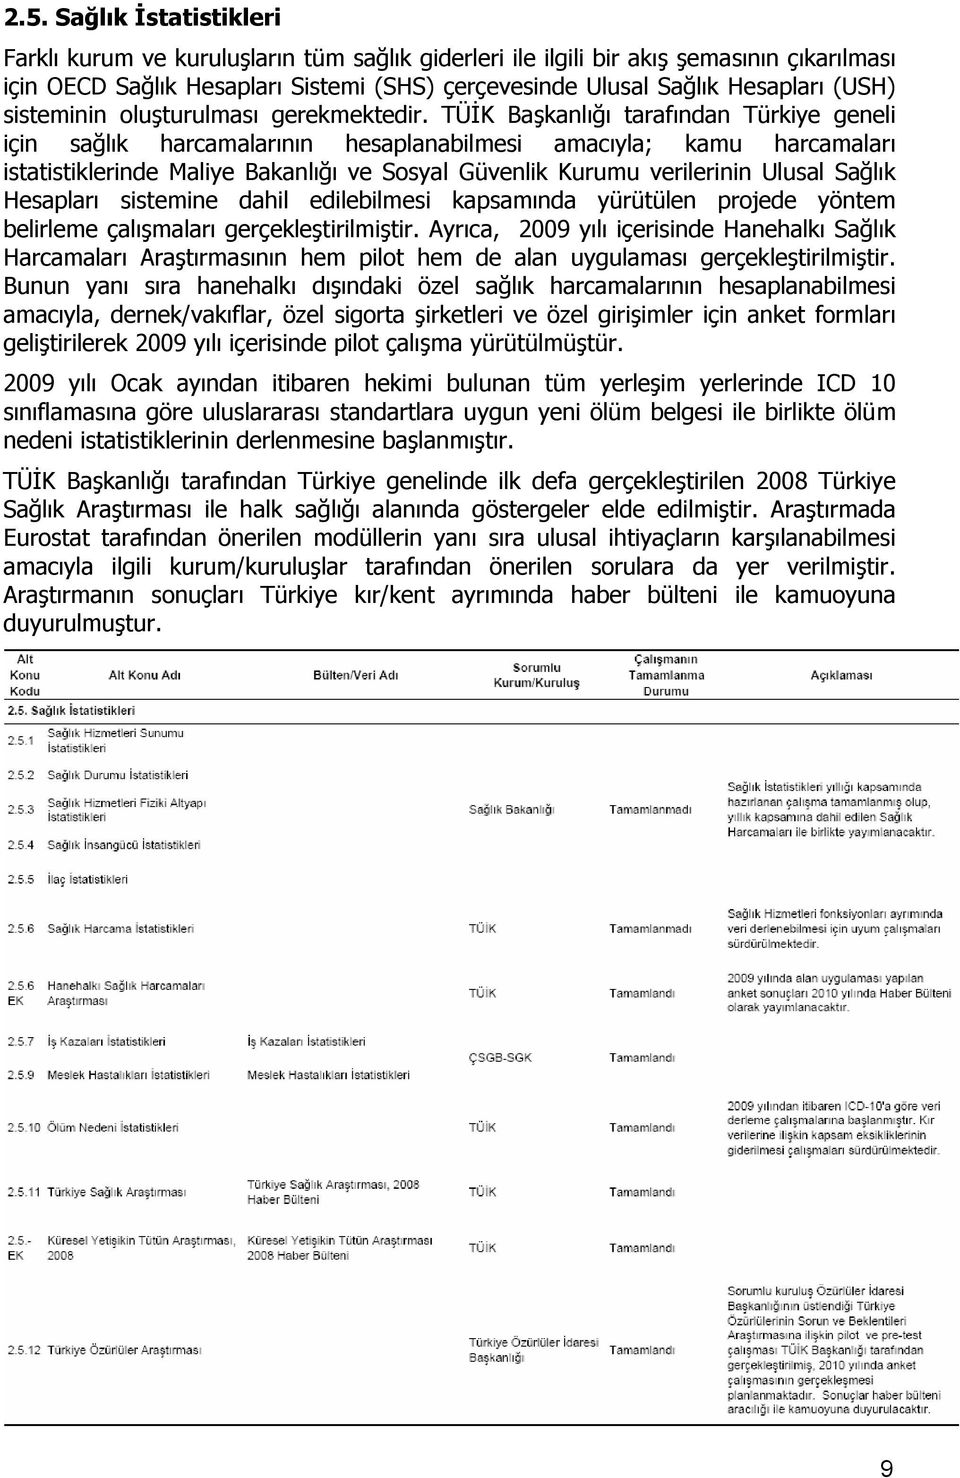 TÜİK Başkanlığı tarafından Türkiye geneli için sağlık harcamalarının hesaplanabilmesi amacıyla; kamu harcamaları istatistiklerinde Maliye Bakanlığı ve Sosyal Güvenlik Kurumu verilerinin Ulusal Sağlık